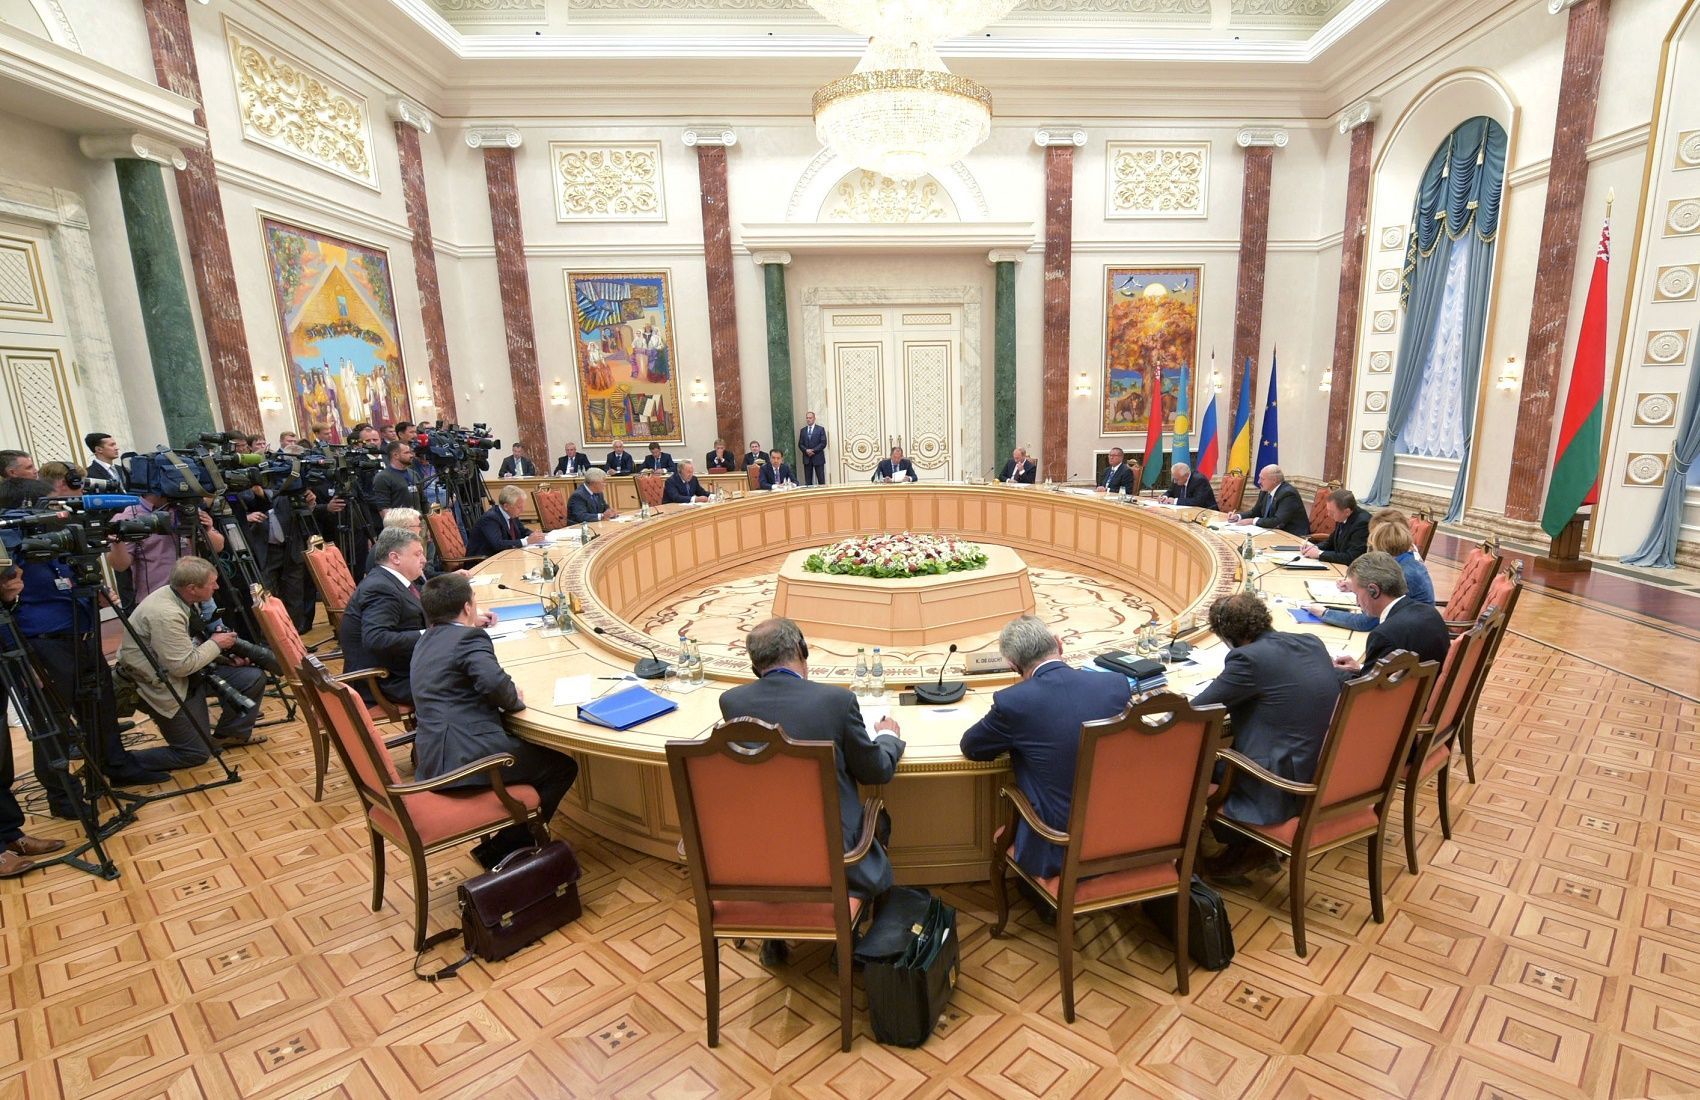 Росіяни записували на відео всі засідання ТКГ, це порушення дипломатії, – Гармаш